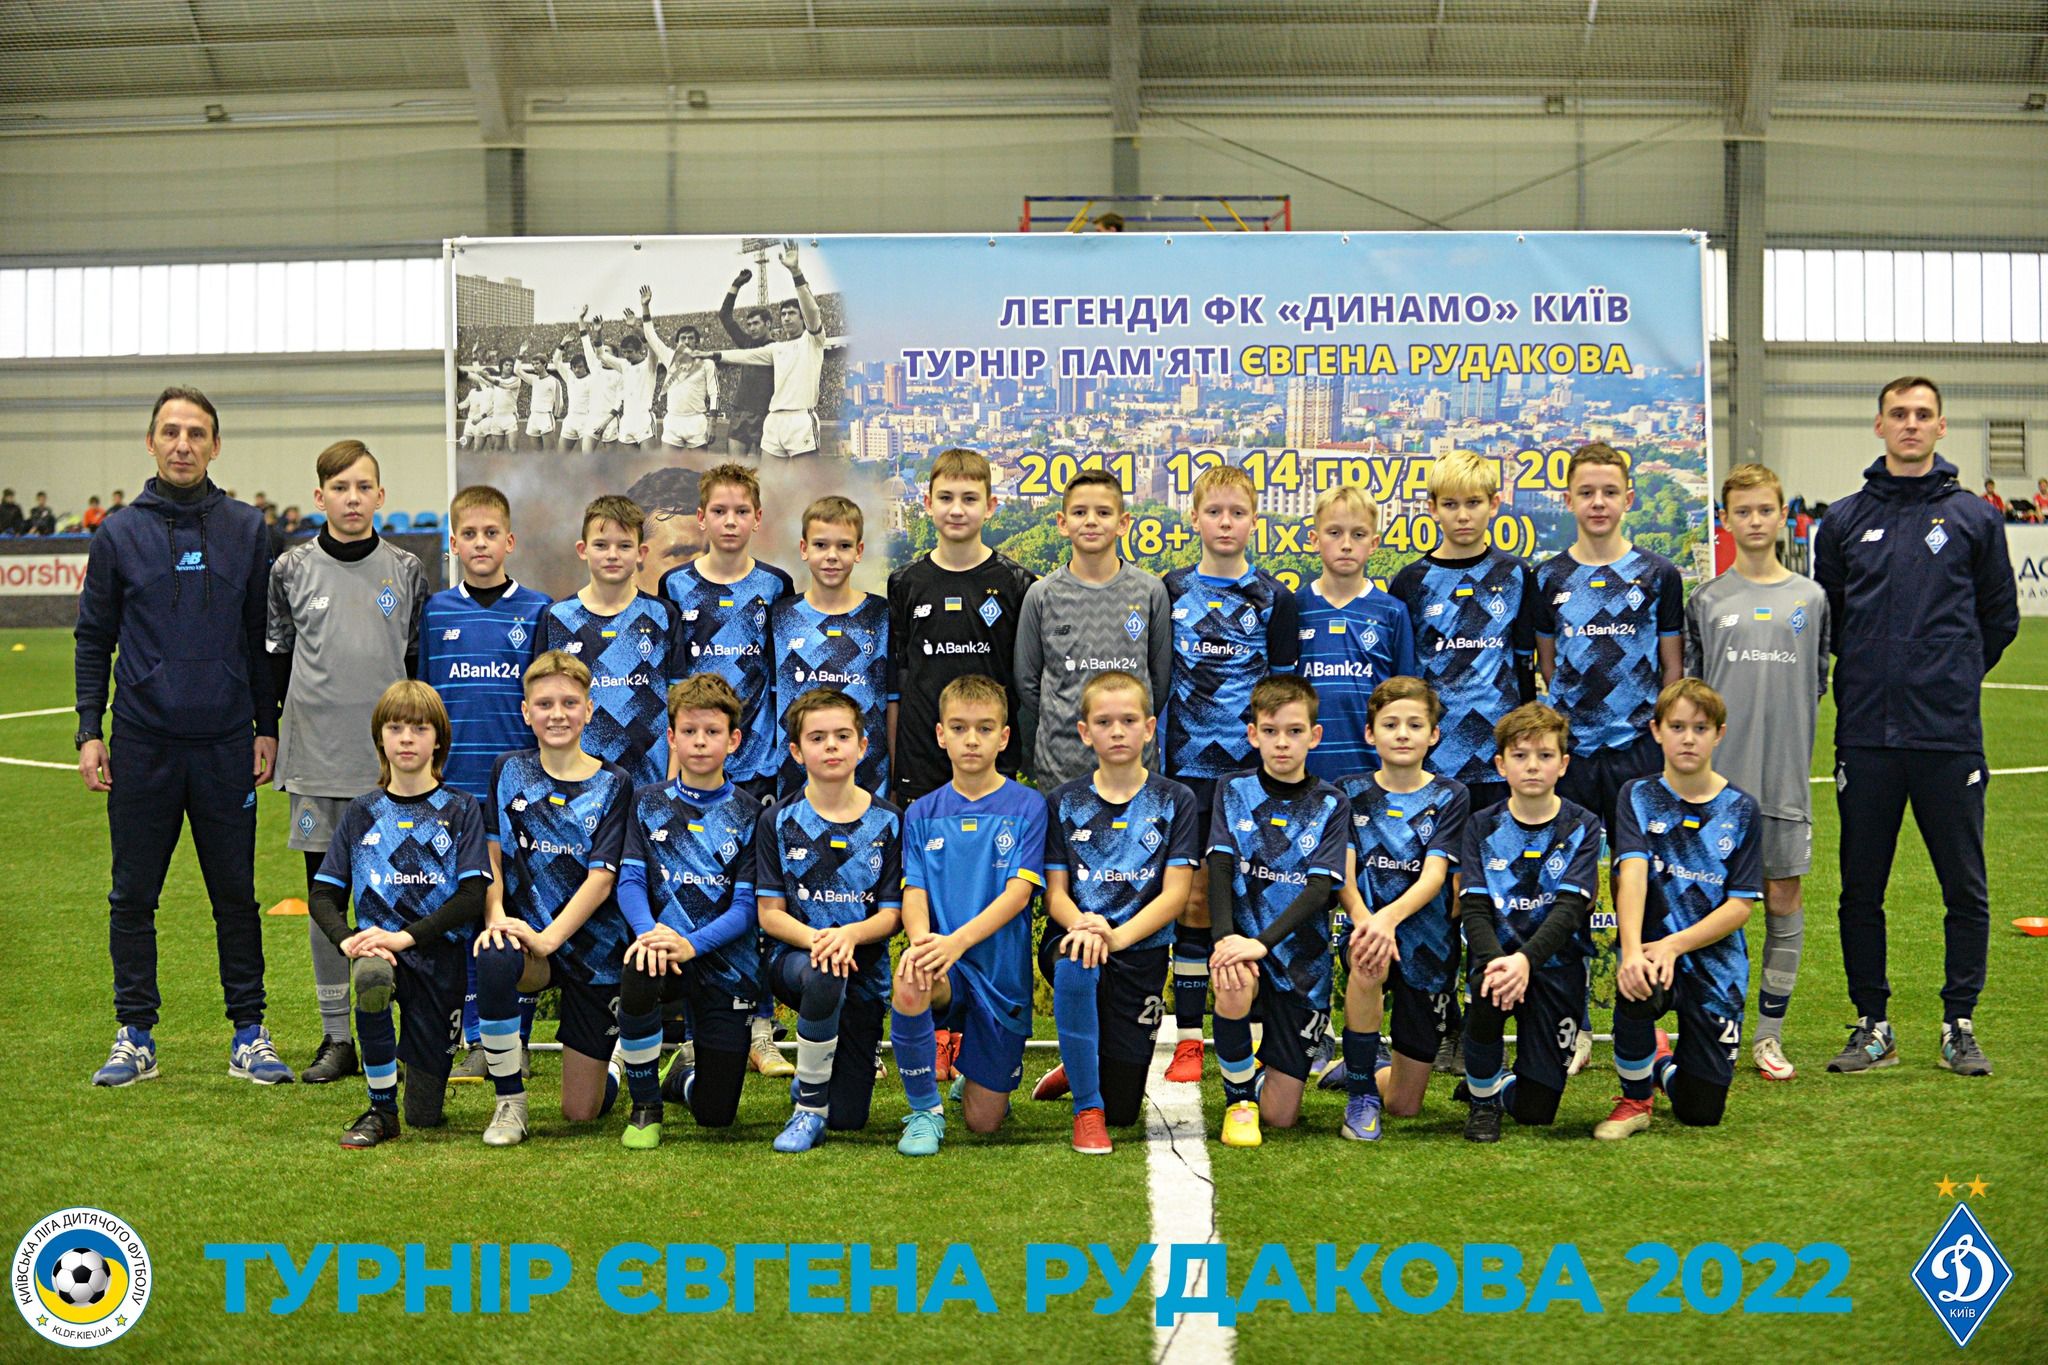 У Києві найкращі дитячі команди позмагалися на турнірі пам'яті Євгена Рудакова